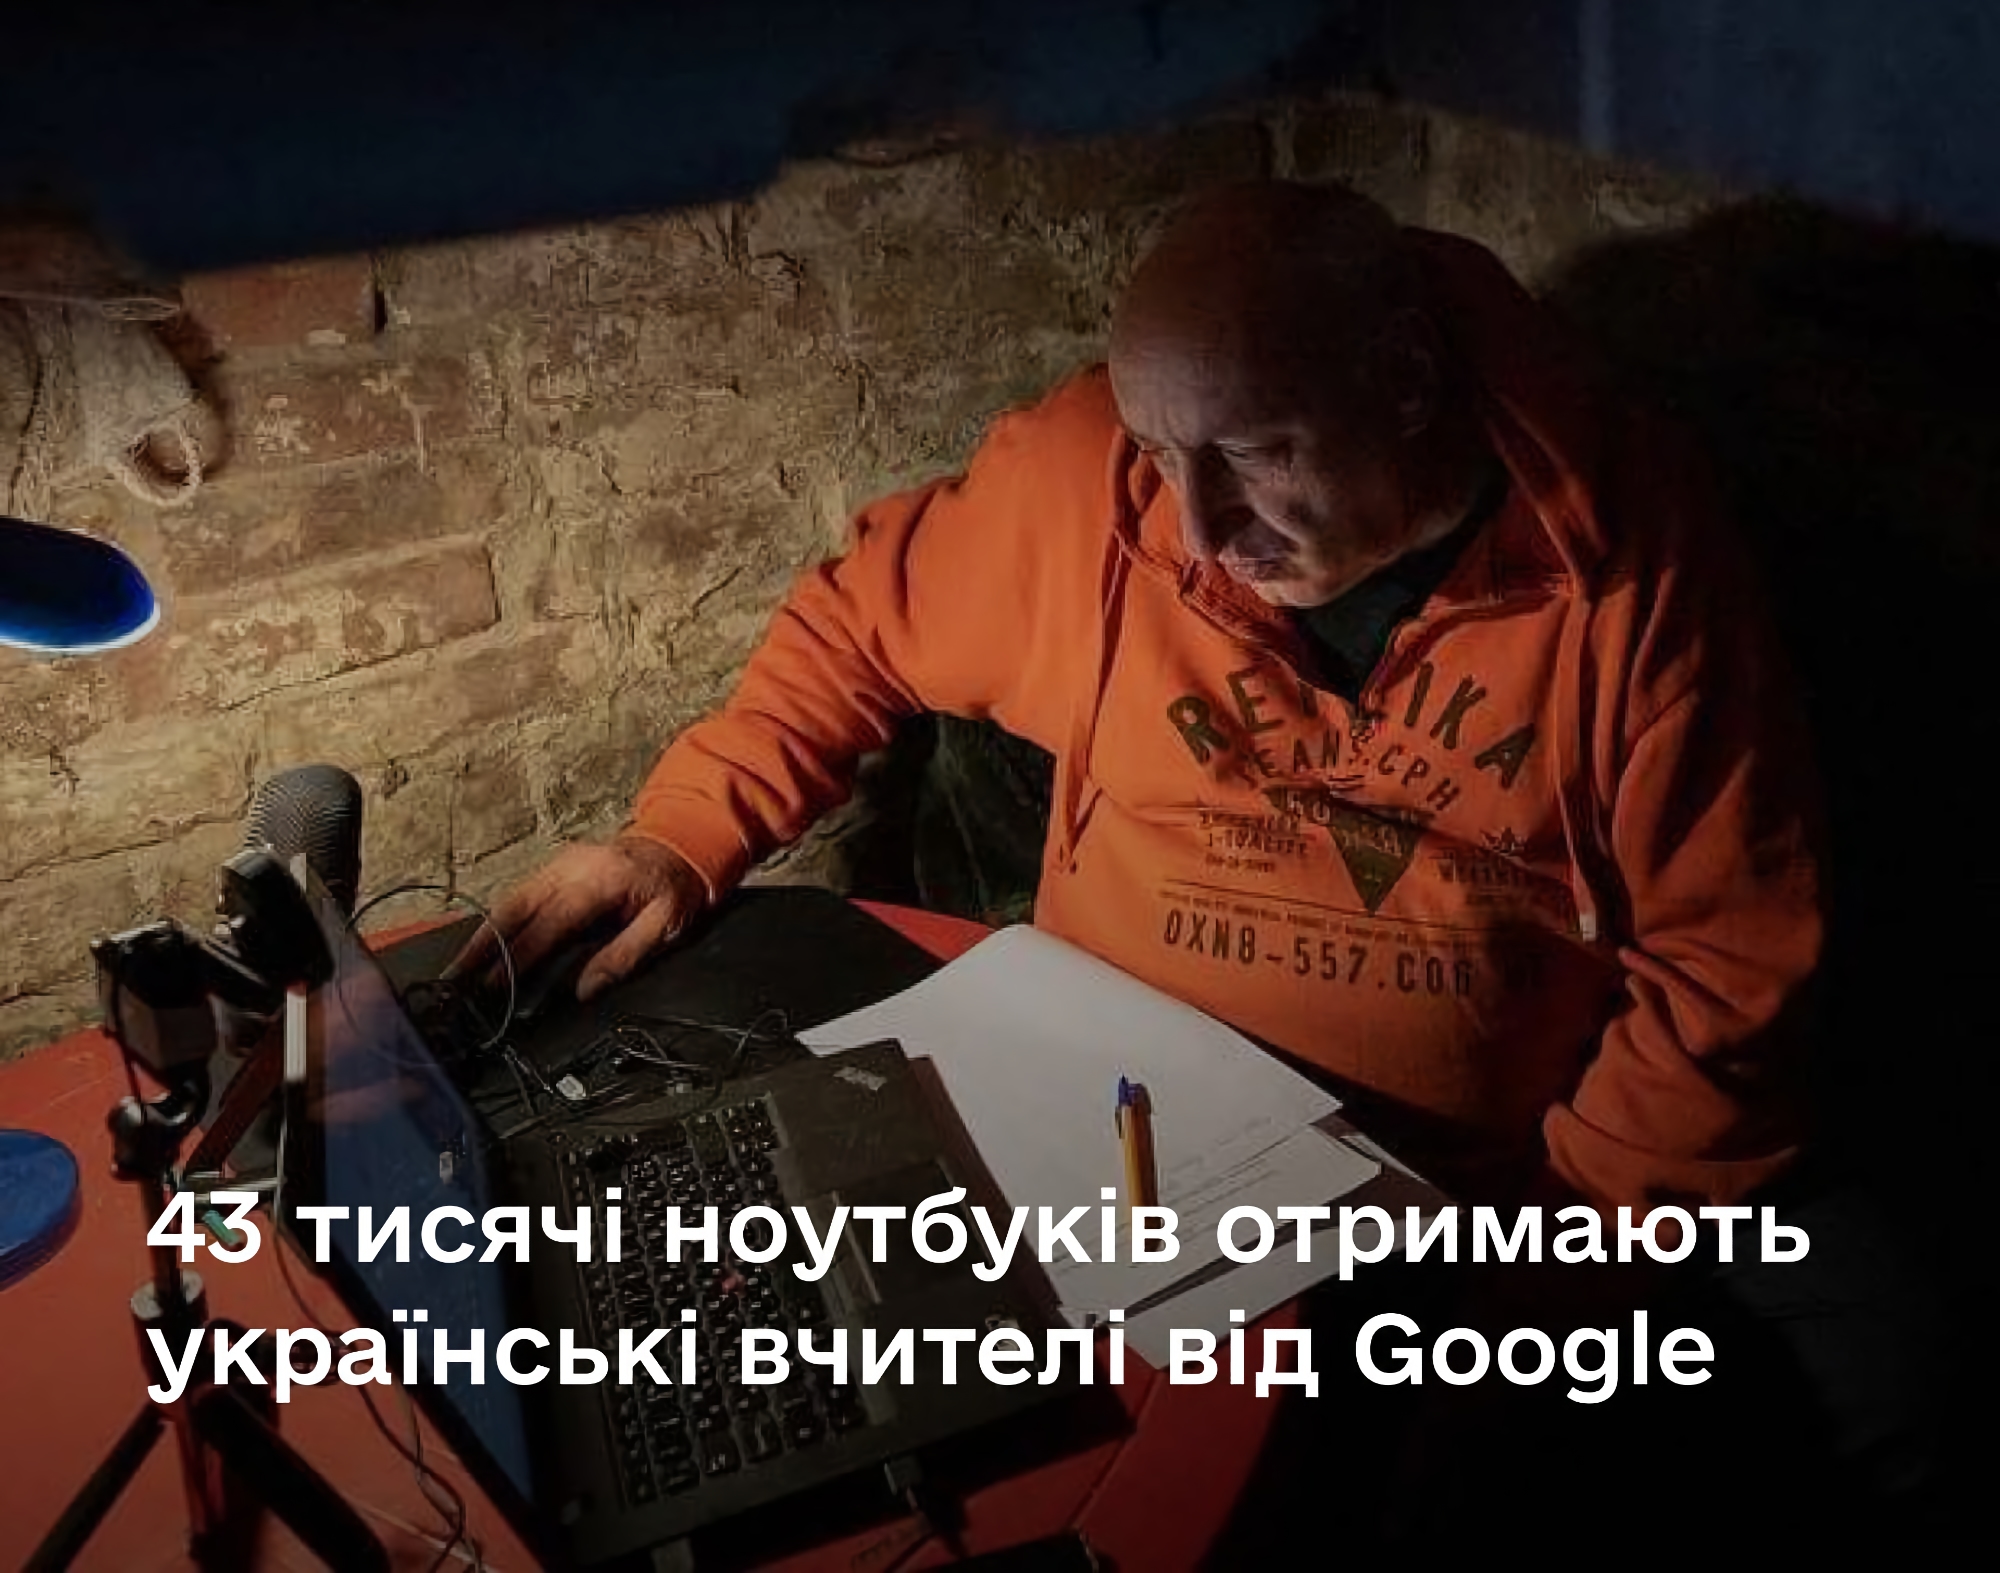 Google udostępni ukraińskim nauczycielom 43 000 laptopów z systemem operacyjnym Chrome